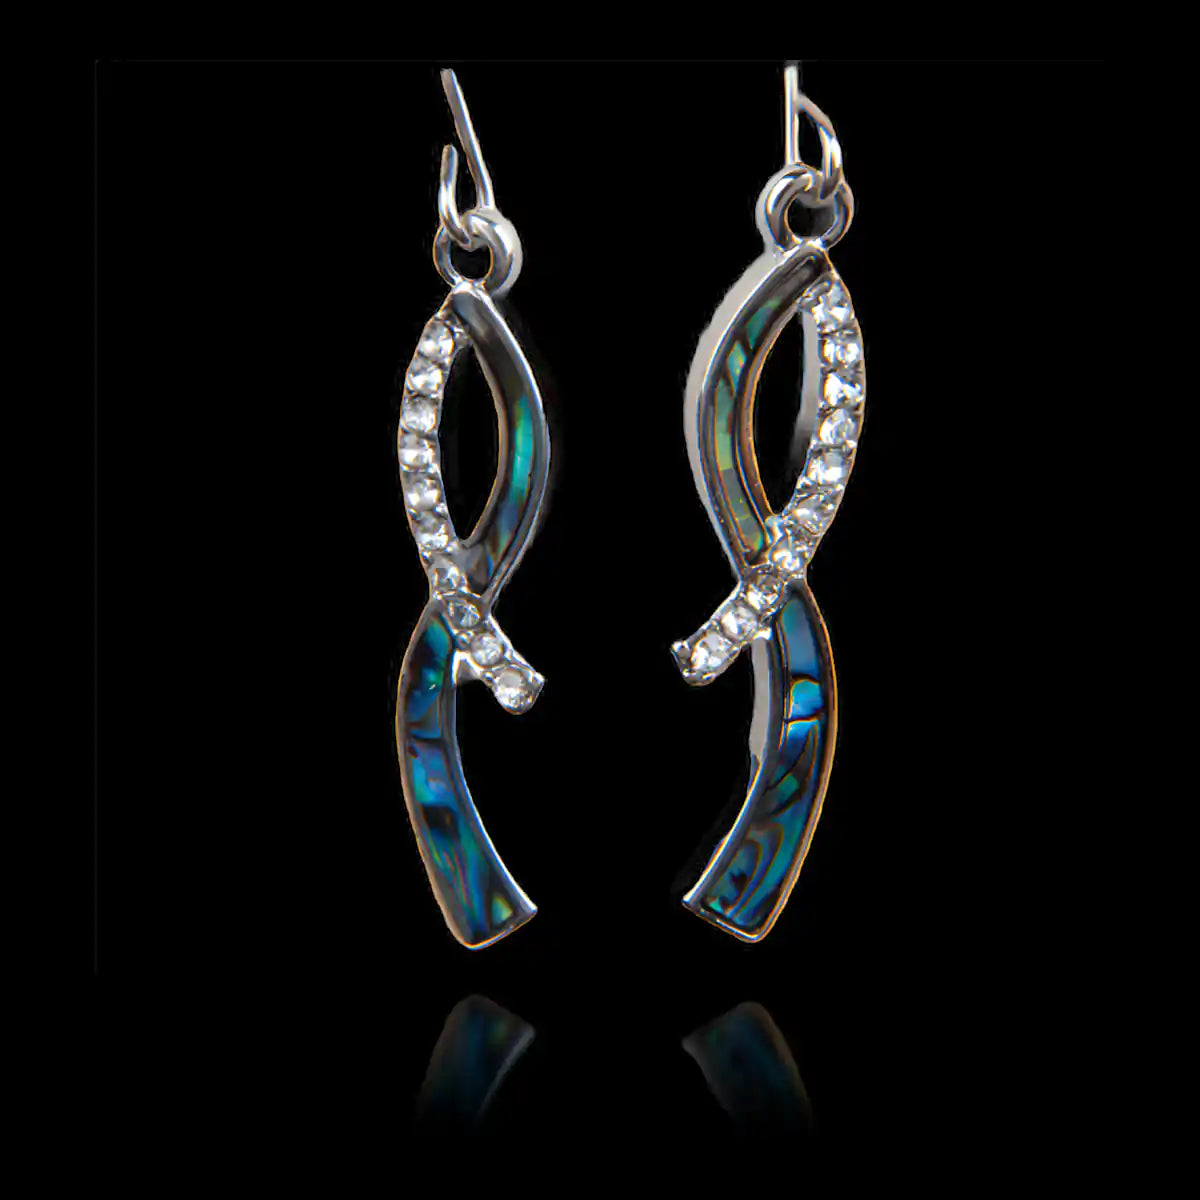 Glacier pearle sincerity earrings